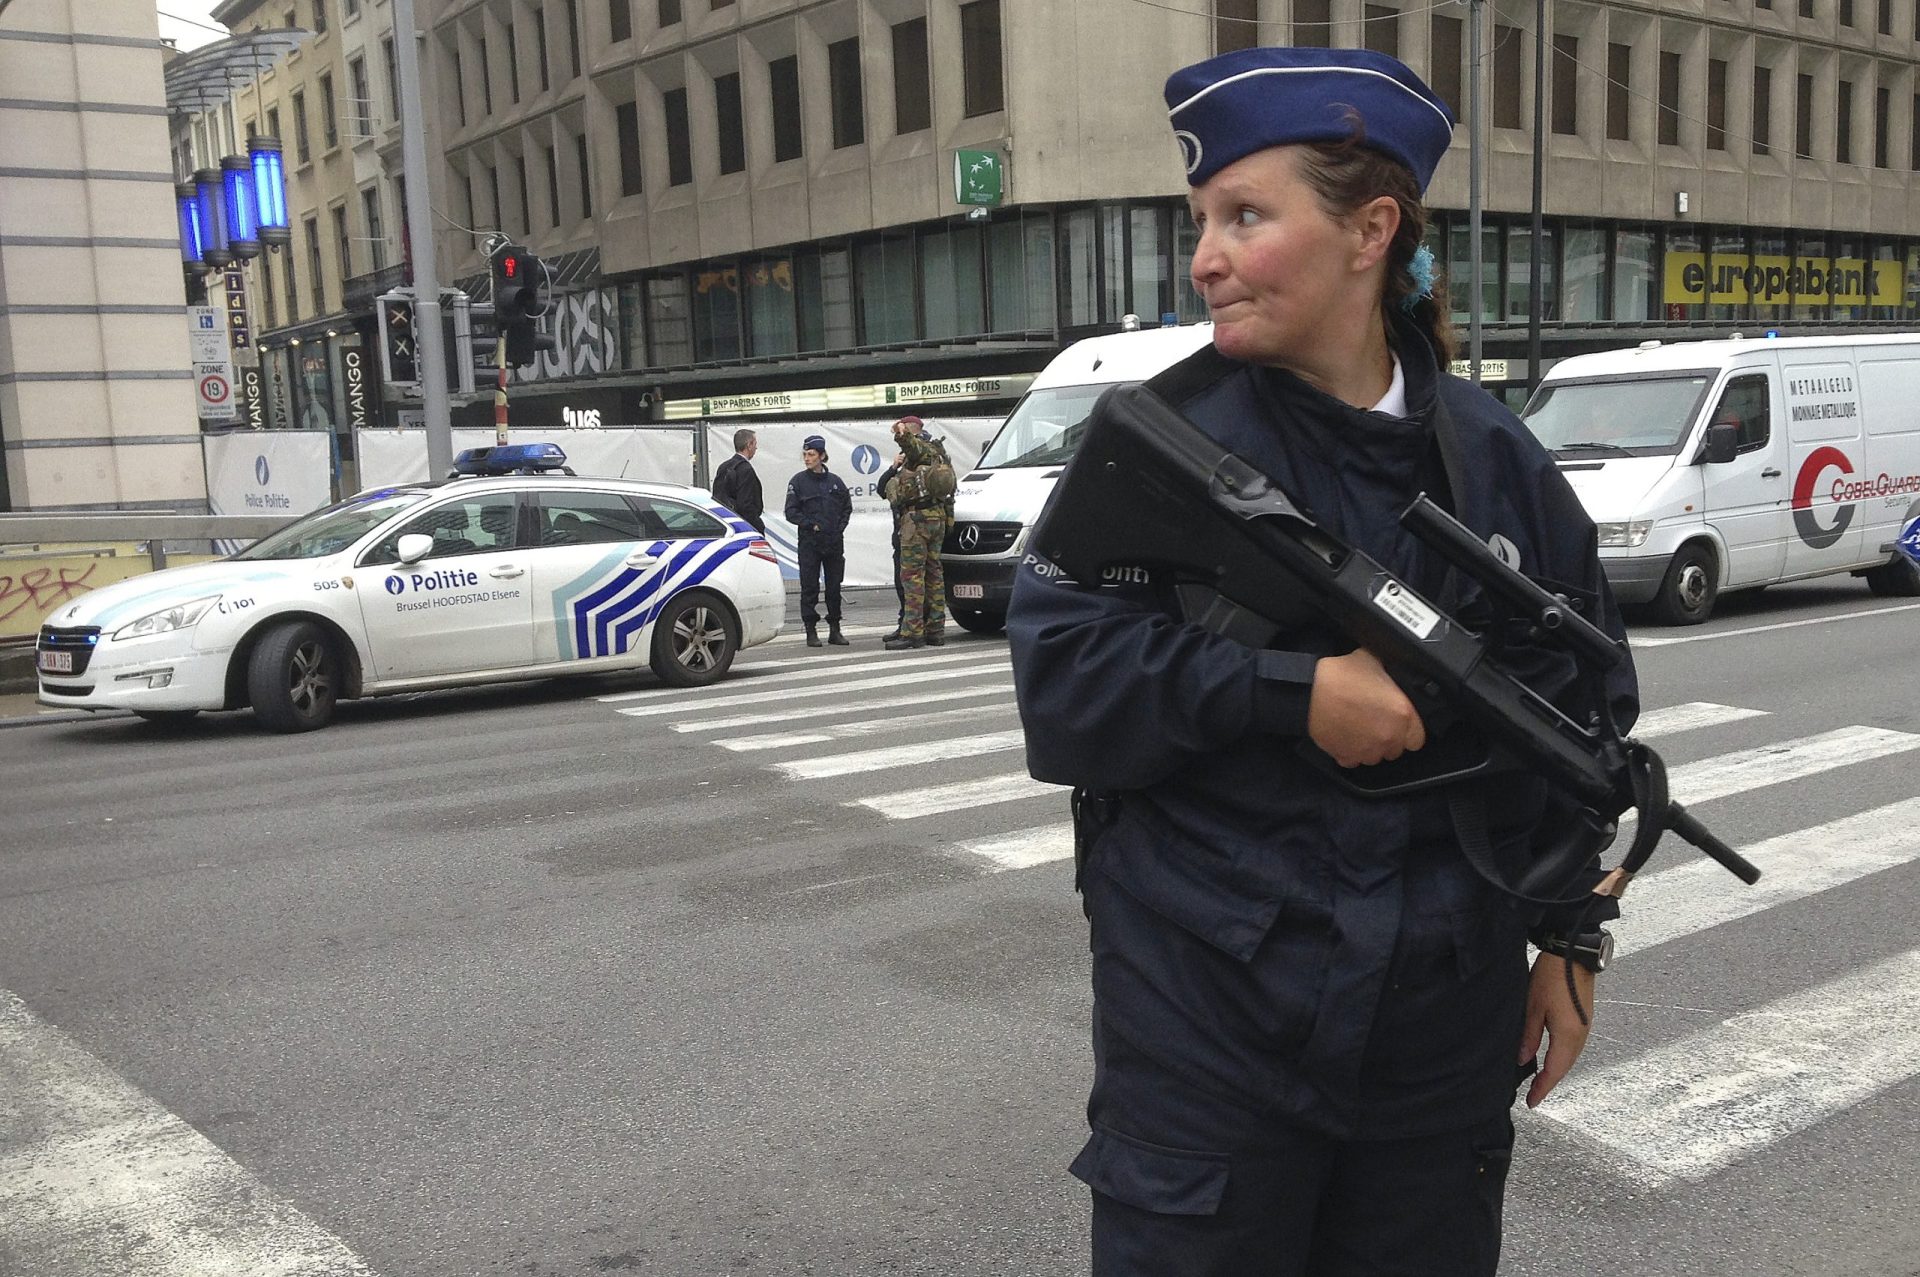 Polícia belga detém suspeito após ameaça de bomba num centro comercial